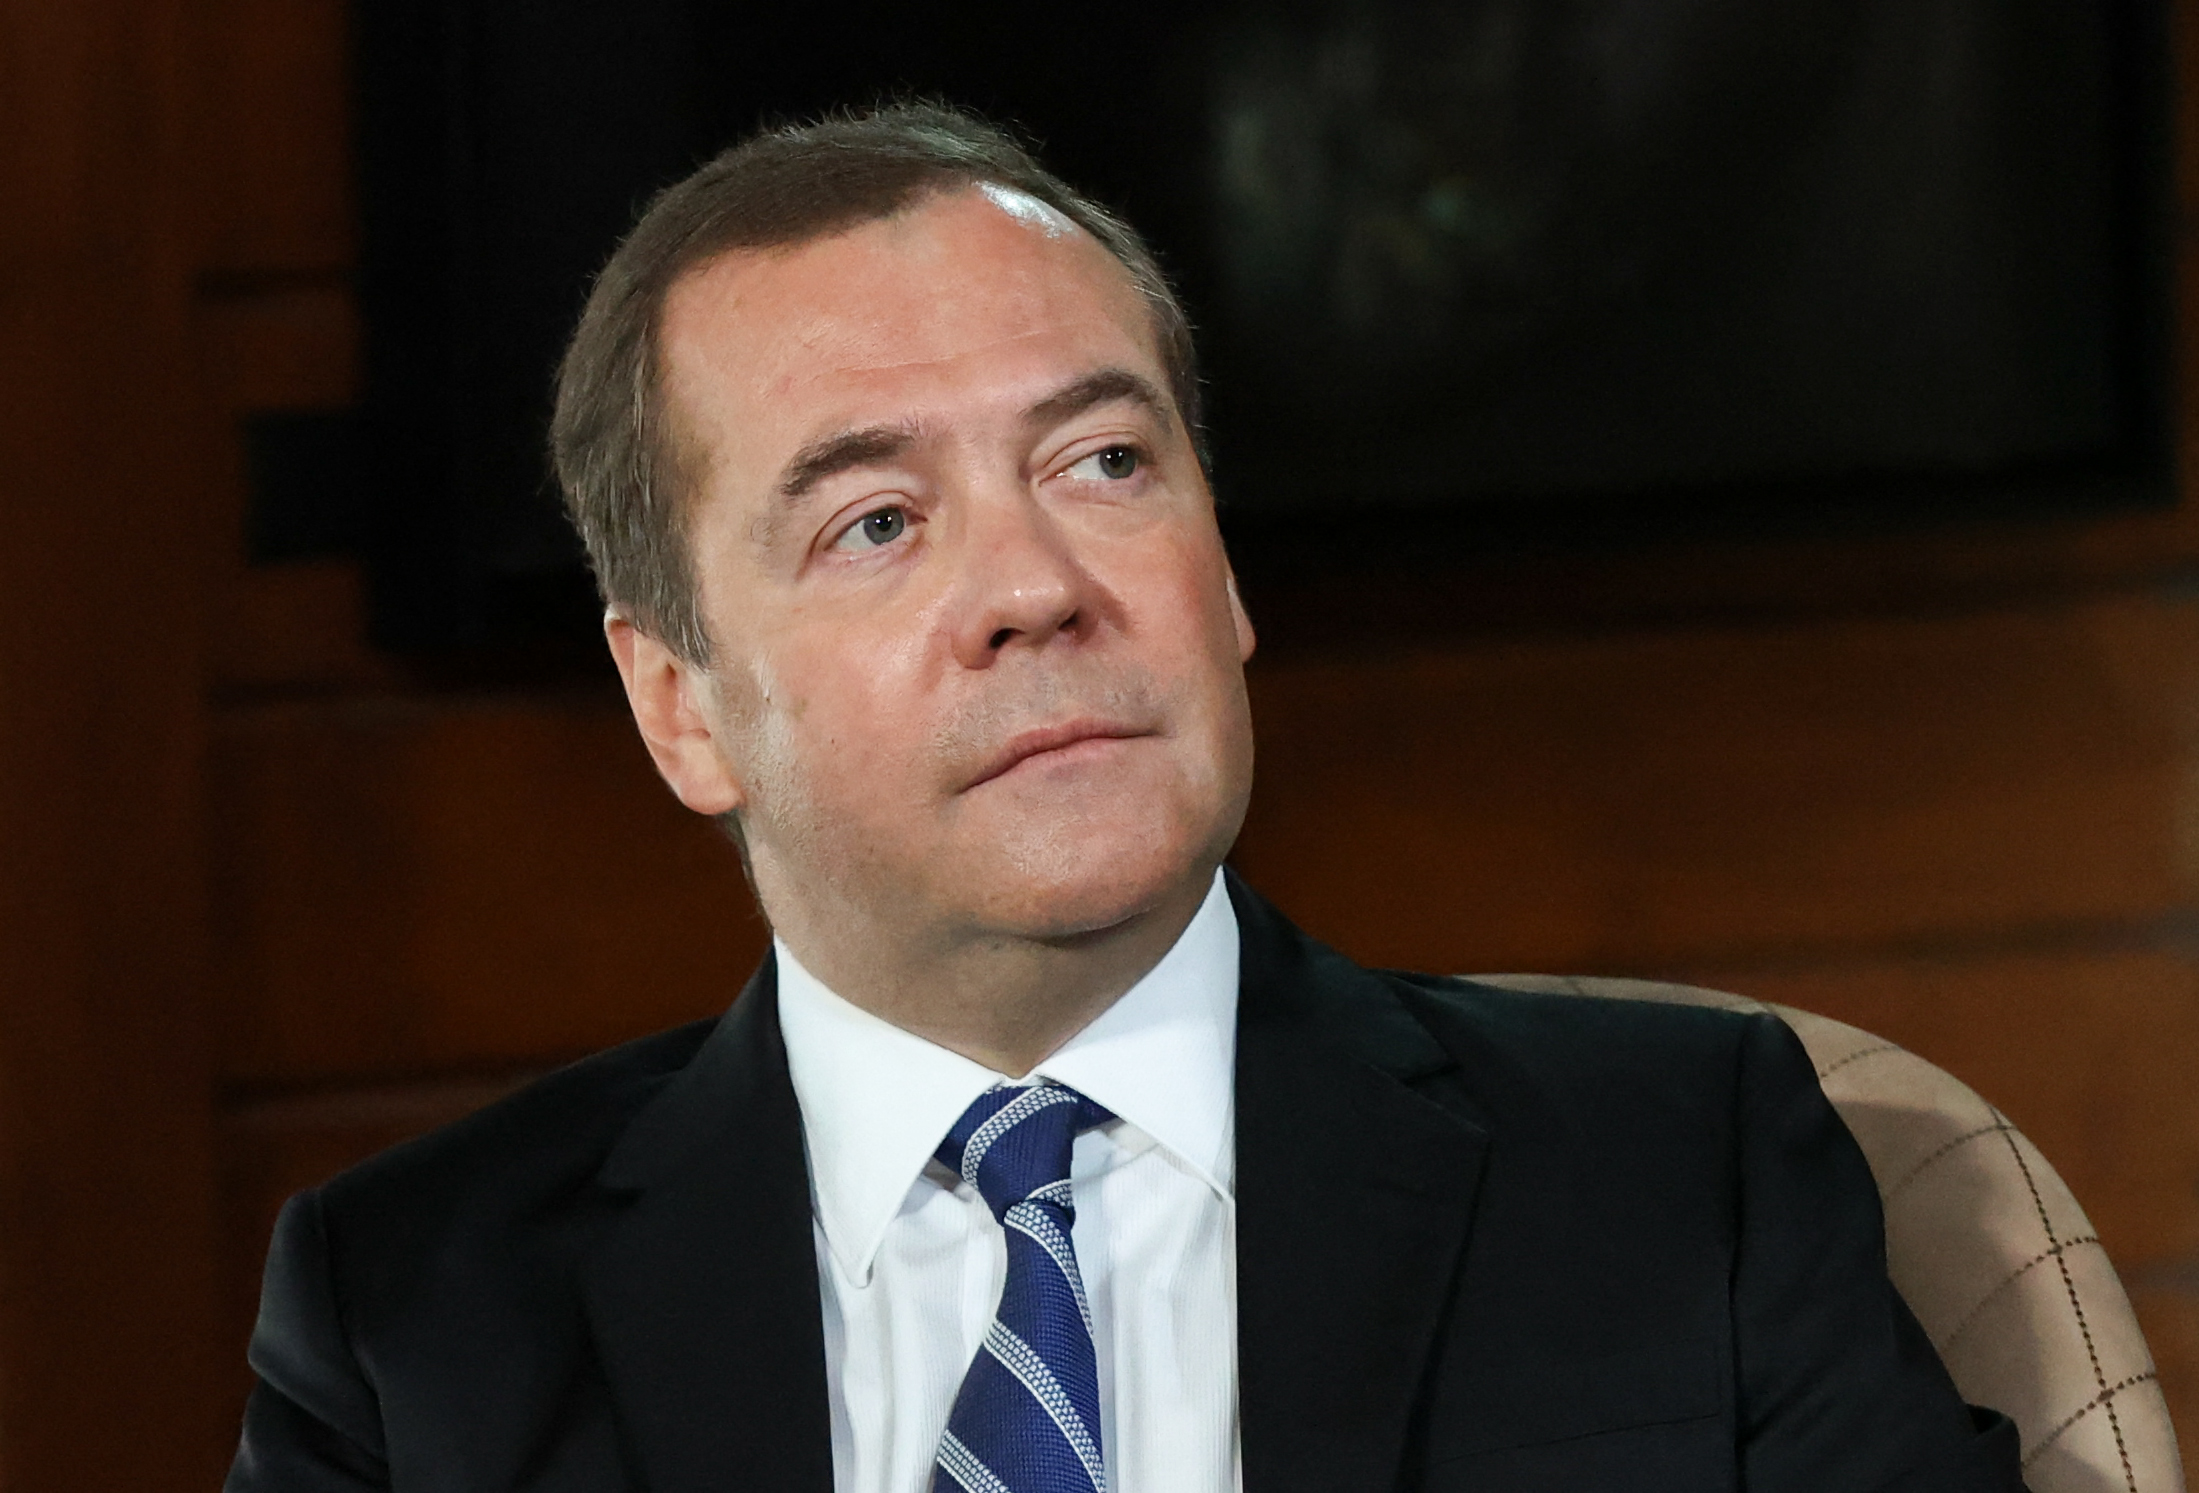 Expresidente ruso Medvedev ataca a los "degenerados" que desean la "muerte" de su país